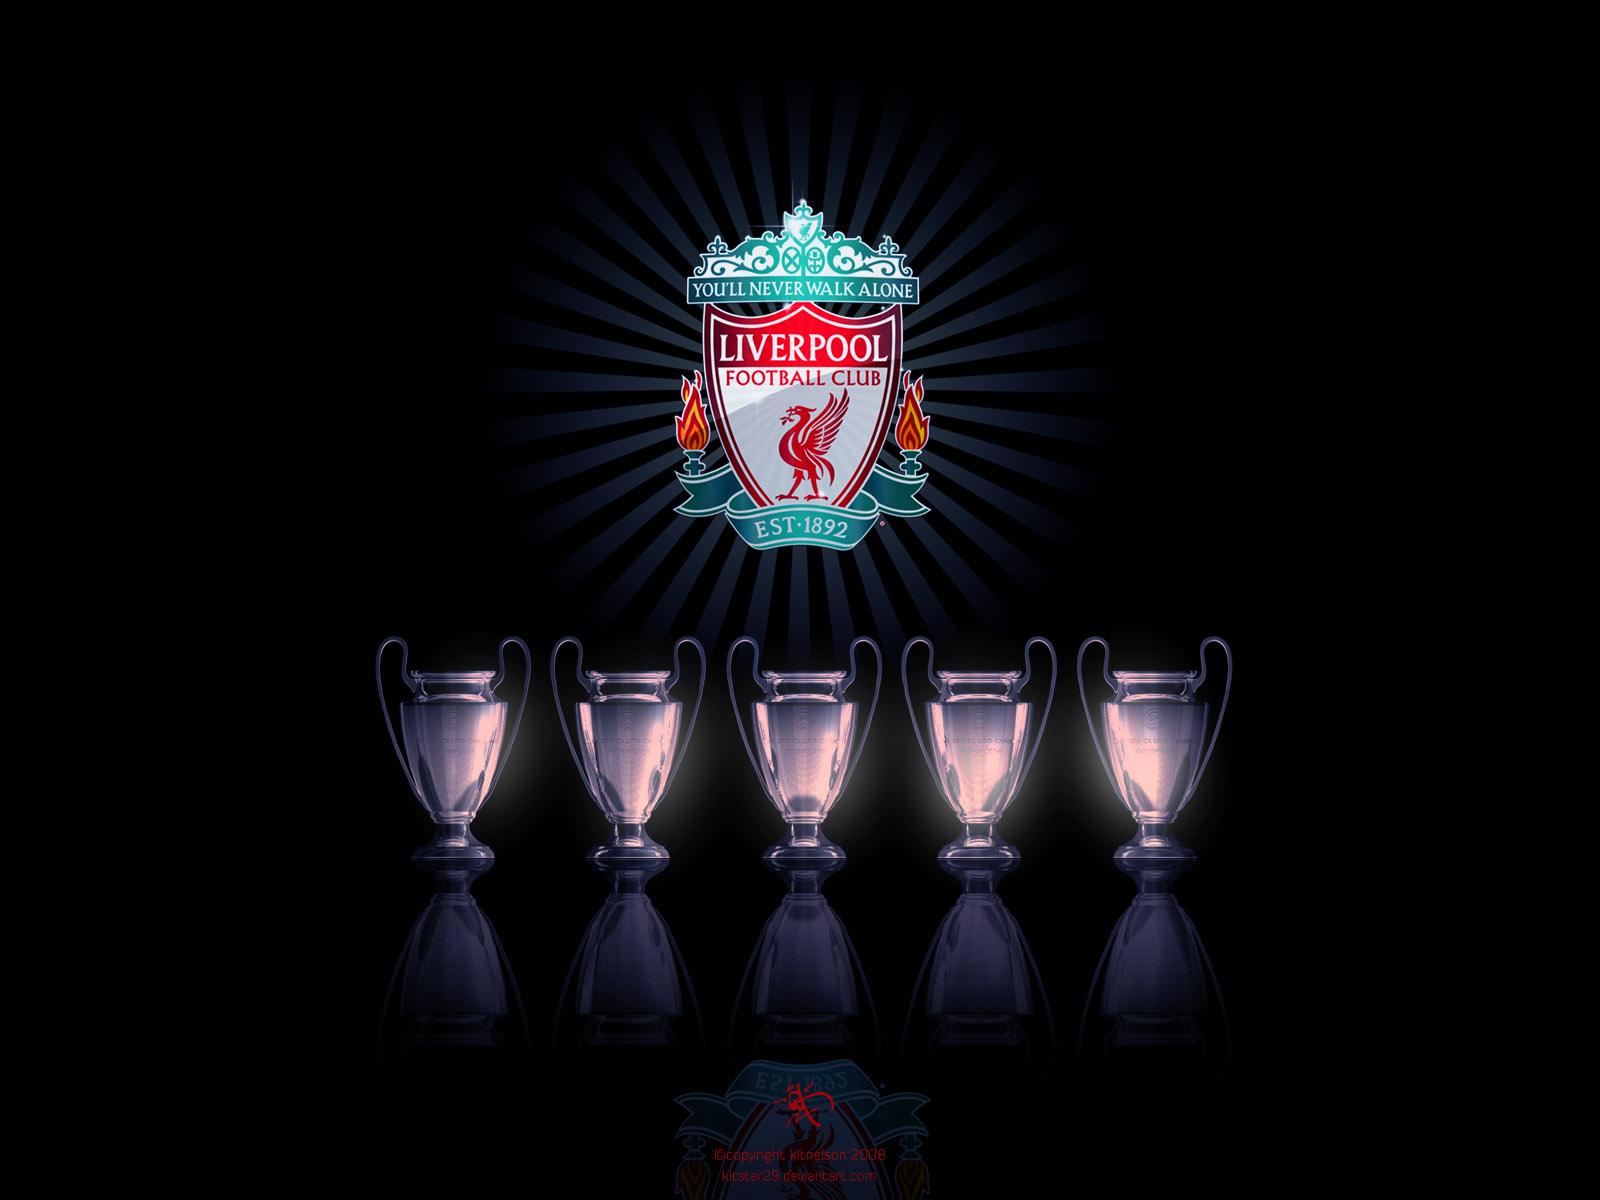 Liverpool FC Wallpaper